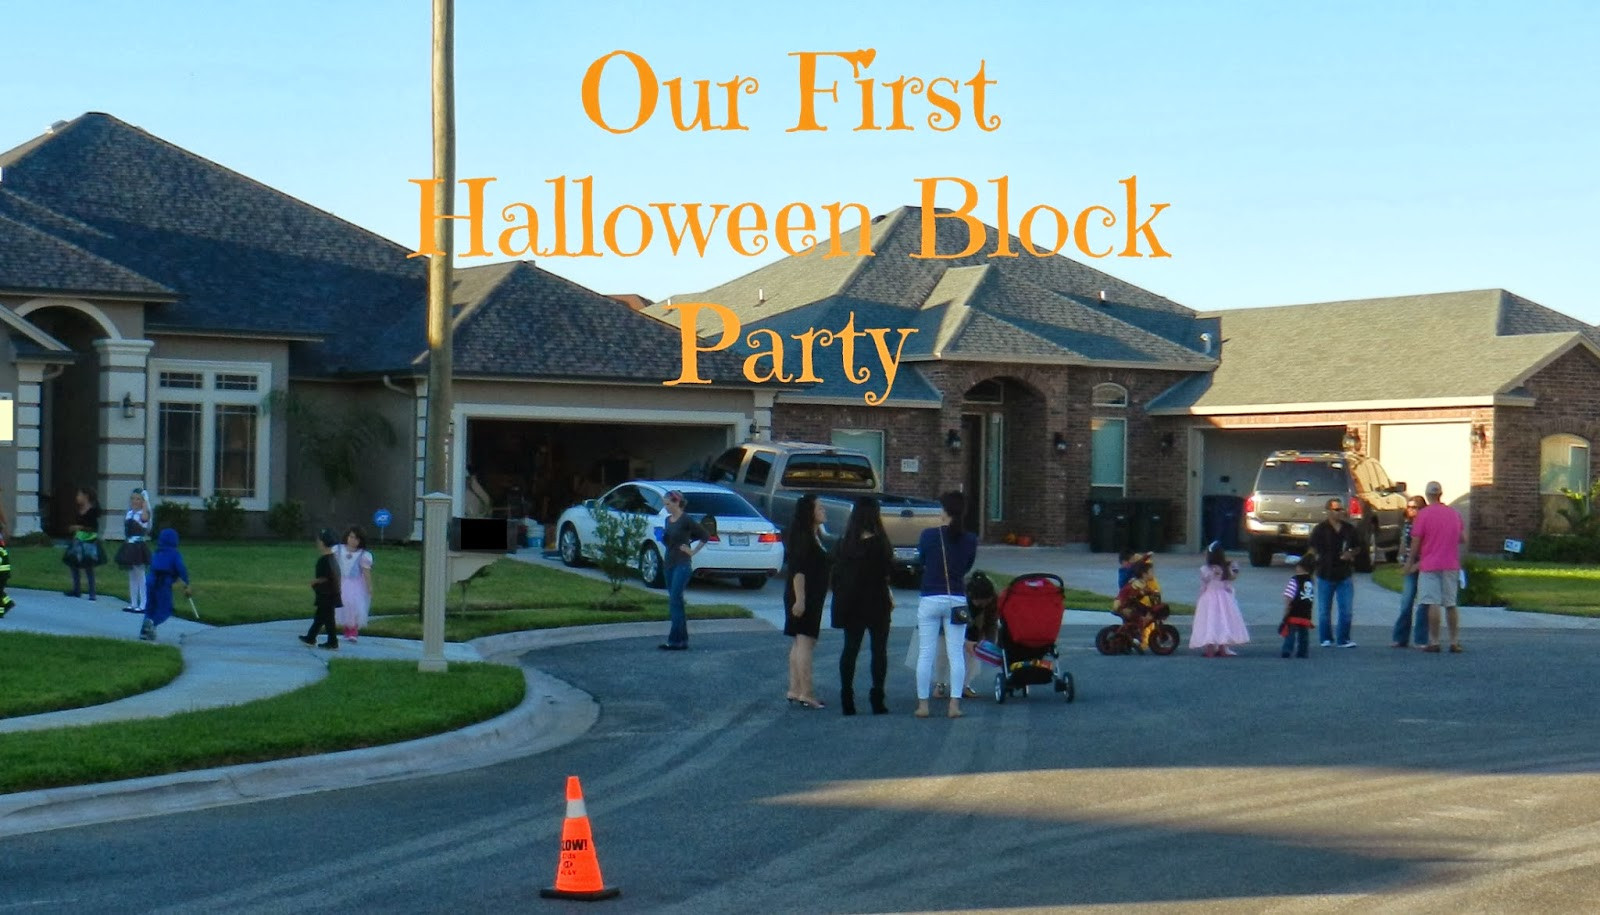 Neighborhood Halloween Block Party Ideas
 Mama Gets It Done Halloween Block Party